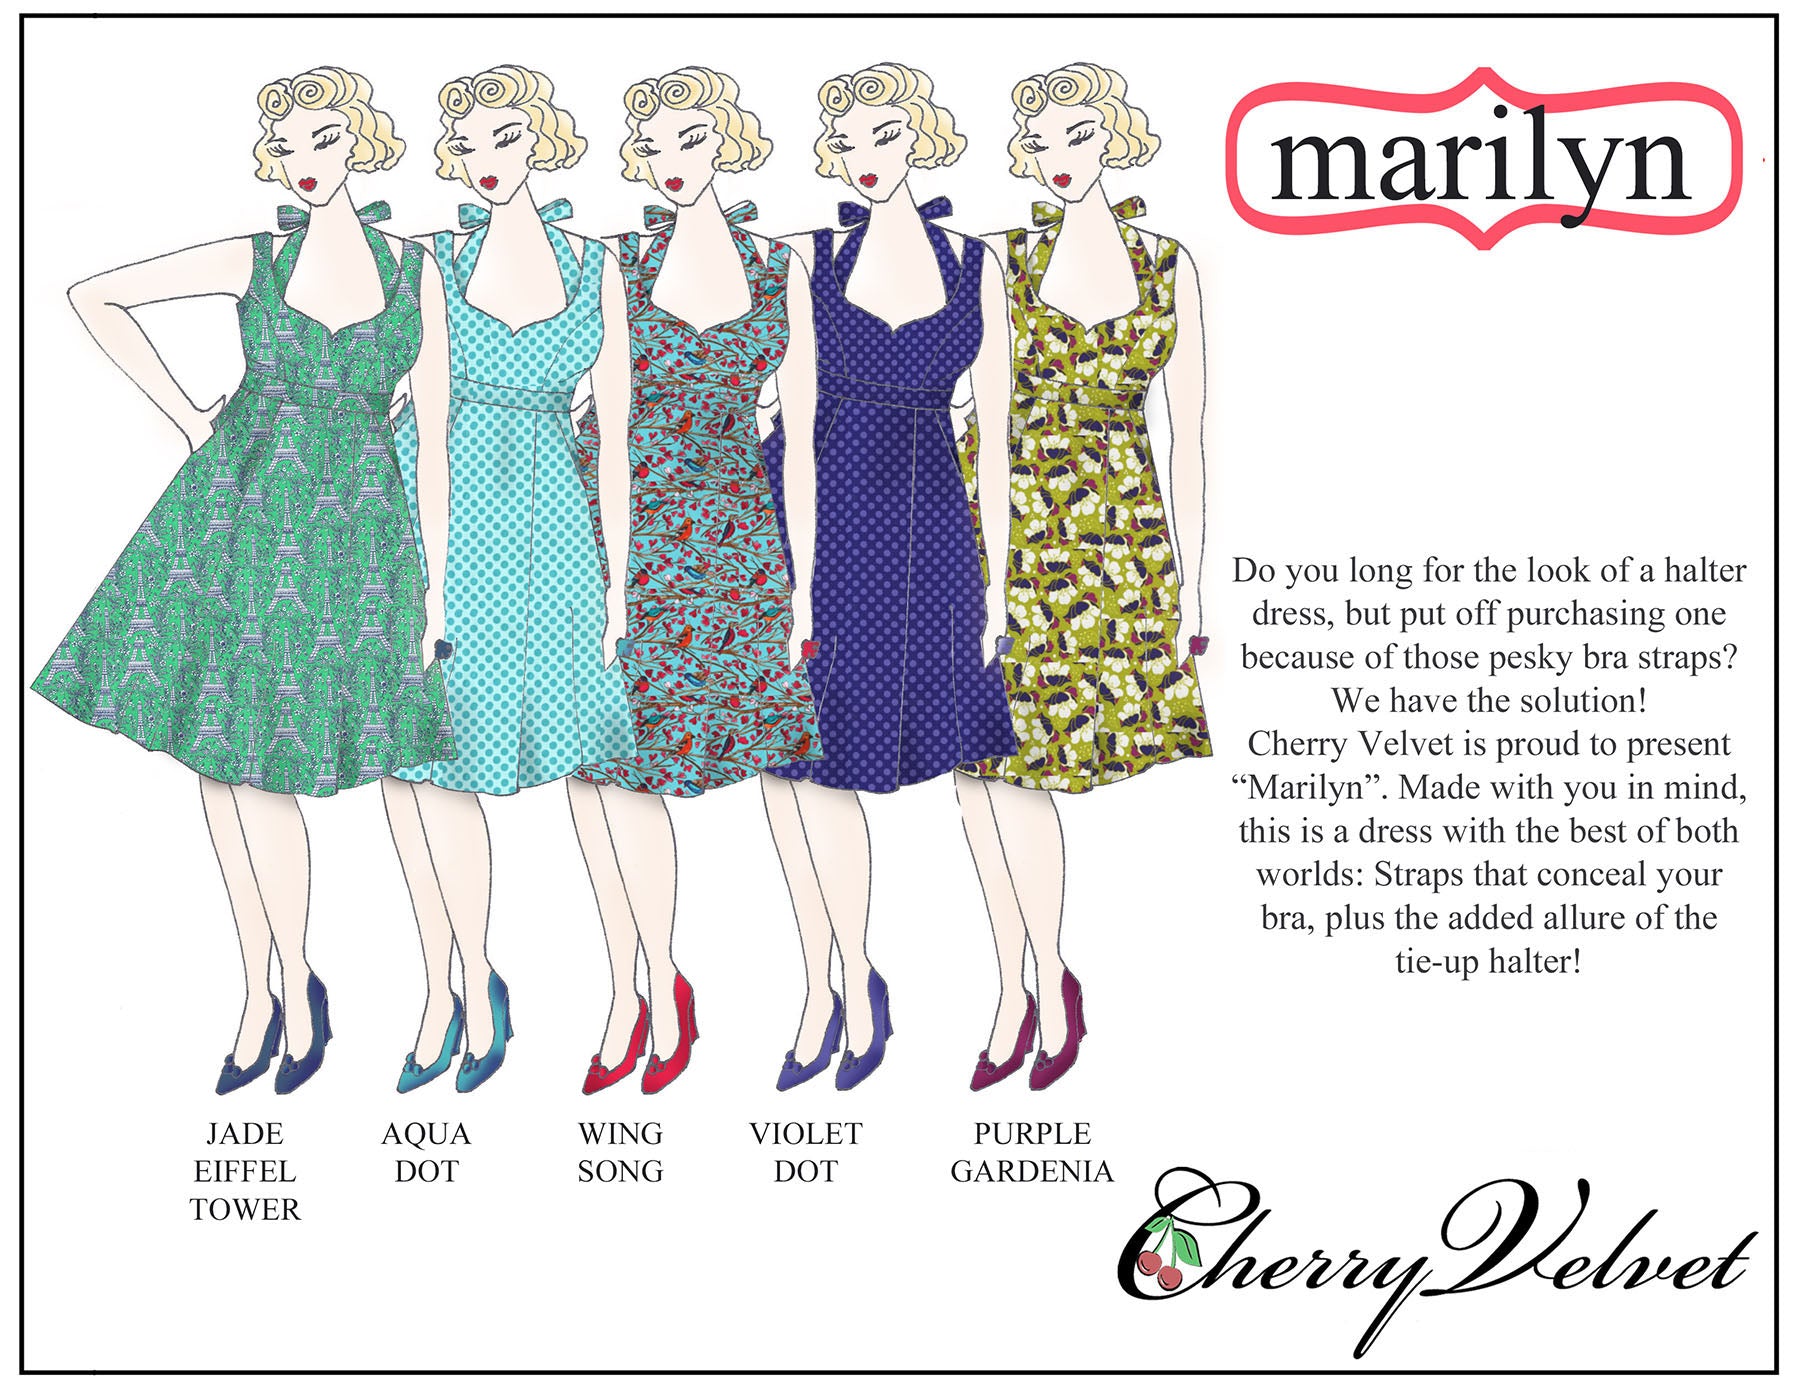 Cherry Velvet Marilyn Dress